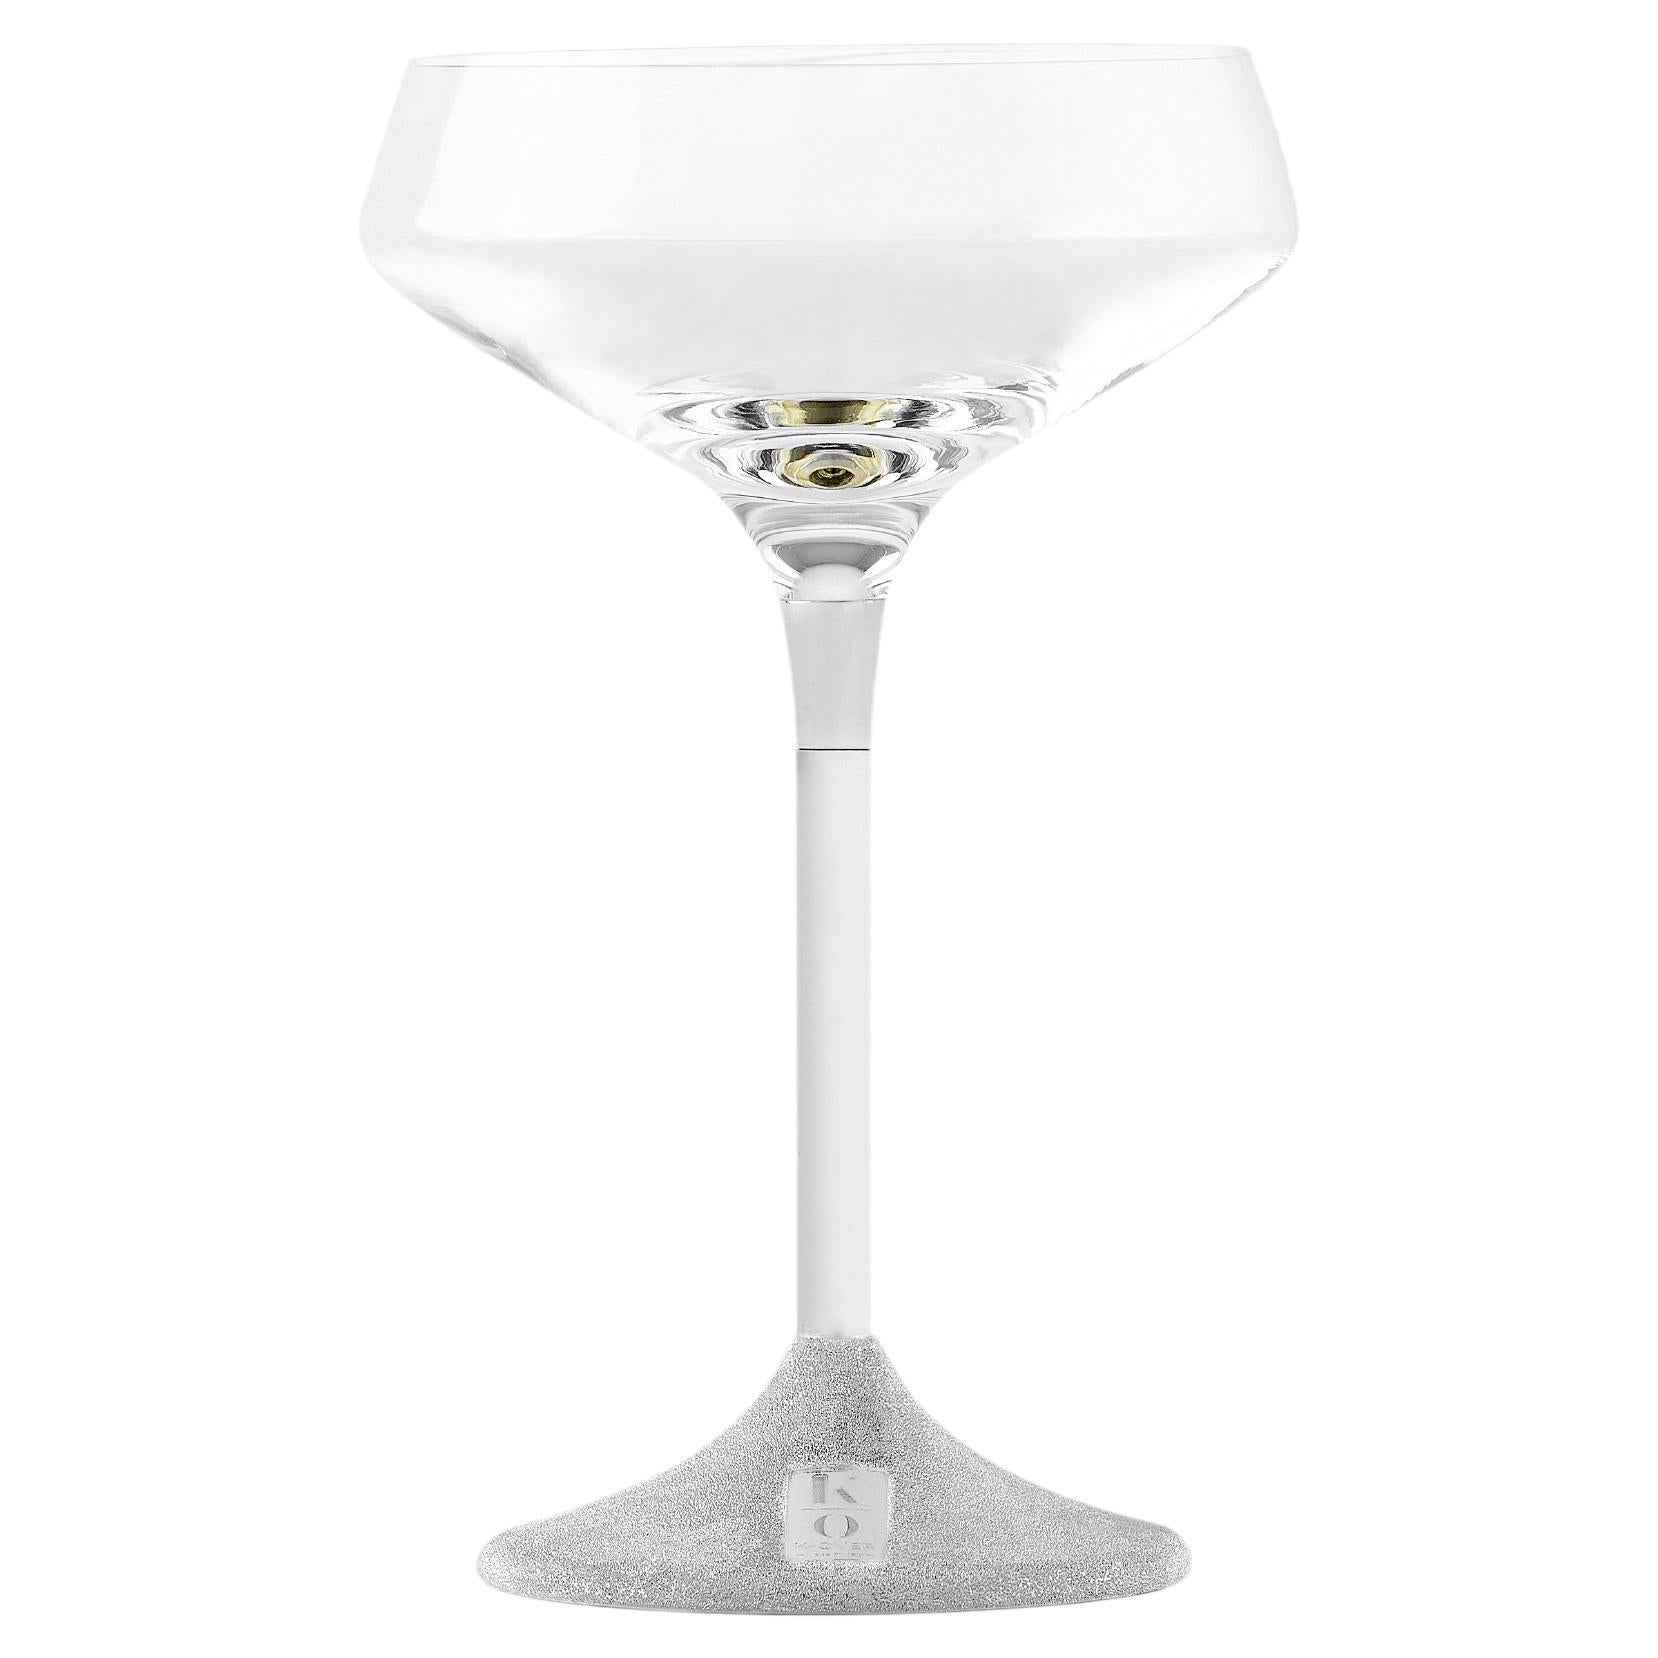 K-Over coppa champagne
I bicchieri con stelo in argento sono la nostra ultima creazione. Una combinazione perfetta di eleganza e praticità che contribuirà ad arricchire la vostra tavola quotidiana ma anche quella delle occasioni speciali. 
La nostra